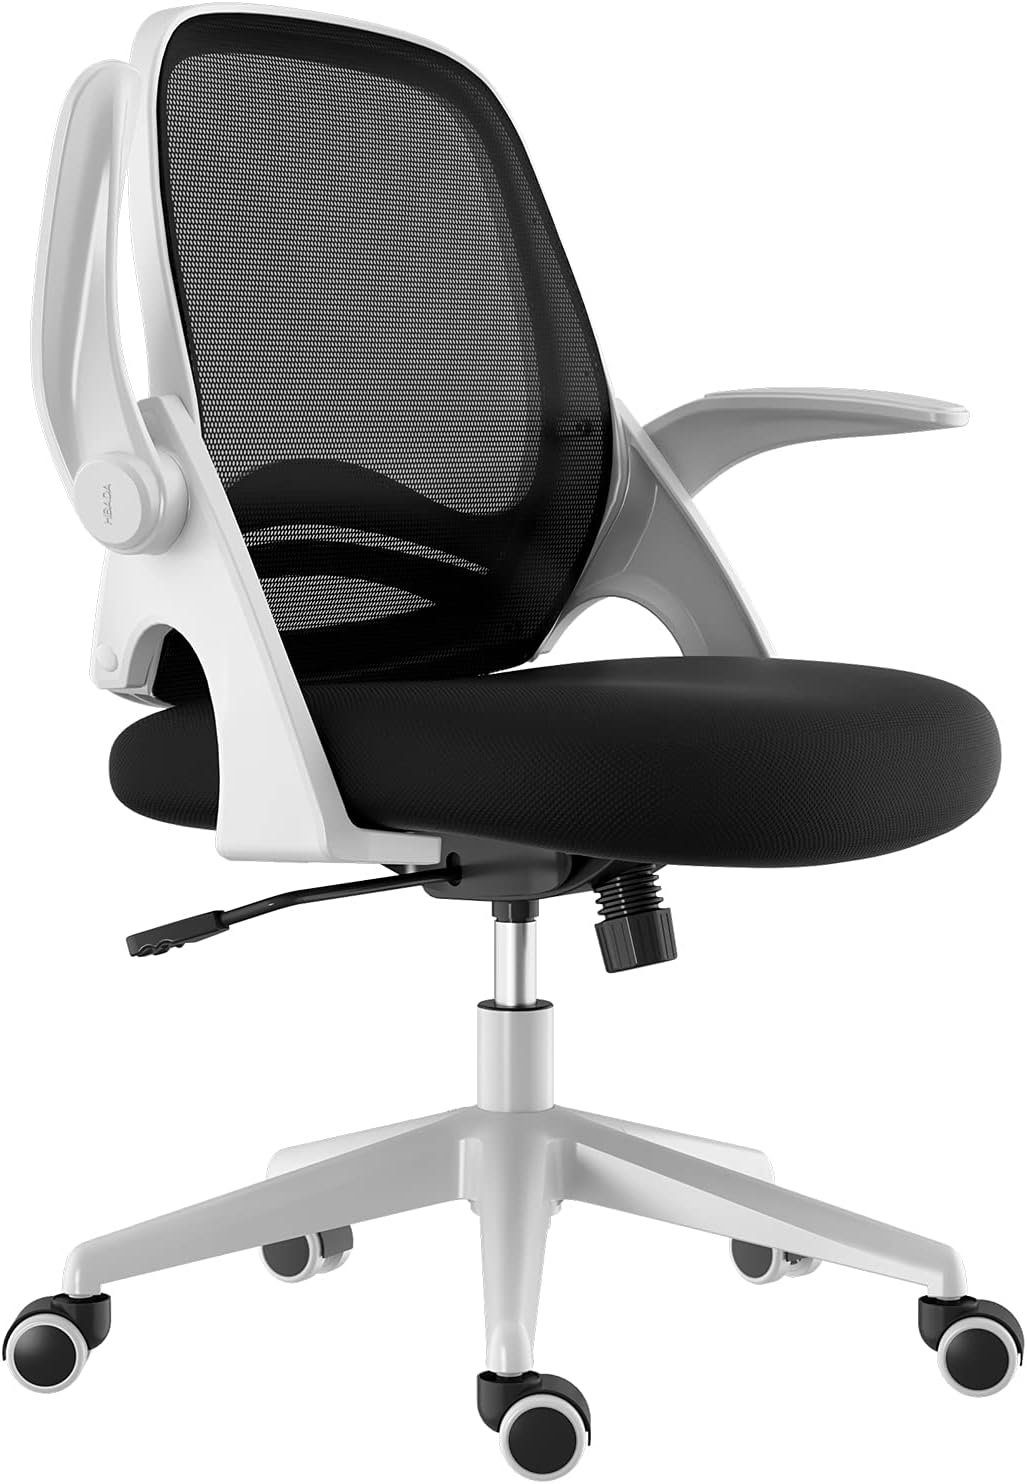 verstellbarem Sitz), Bürostuhl Schreibtischstuhl Ergonomischer Bürostuhl mit Hbada ergonomisch: Schreibtischstuhl (Bürostuhl Drehstuhl